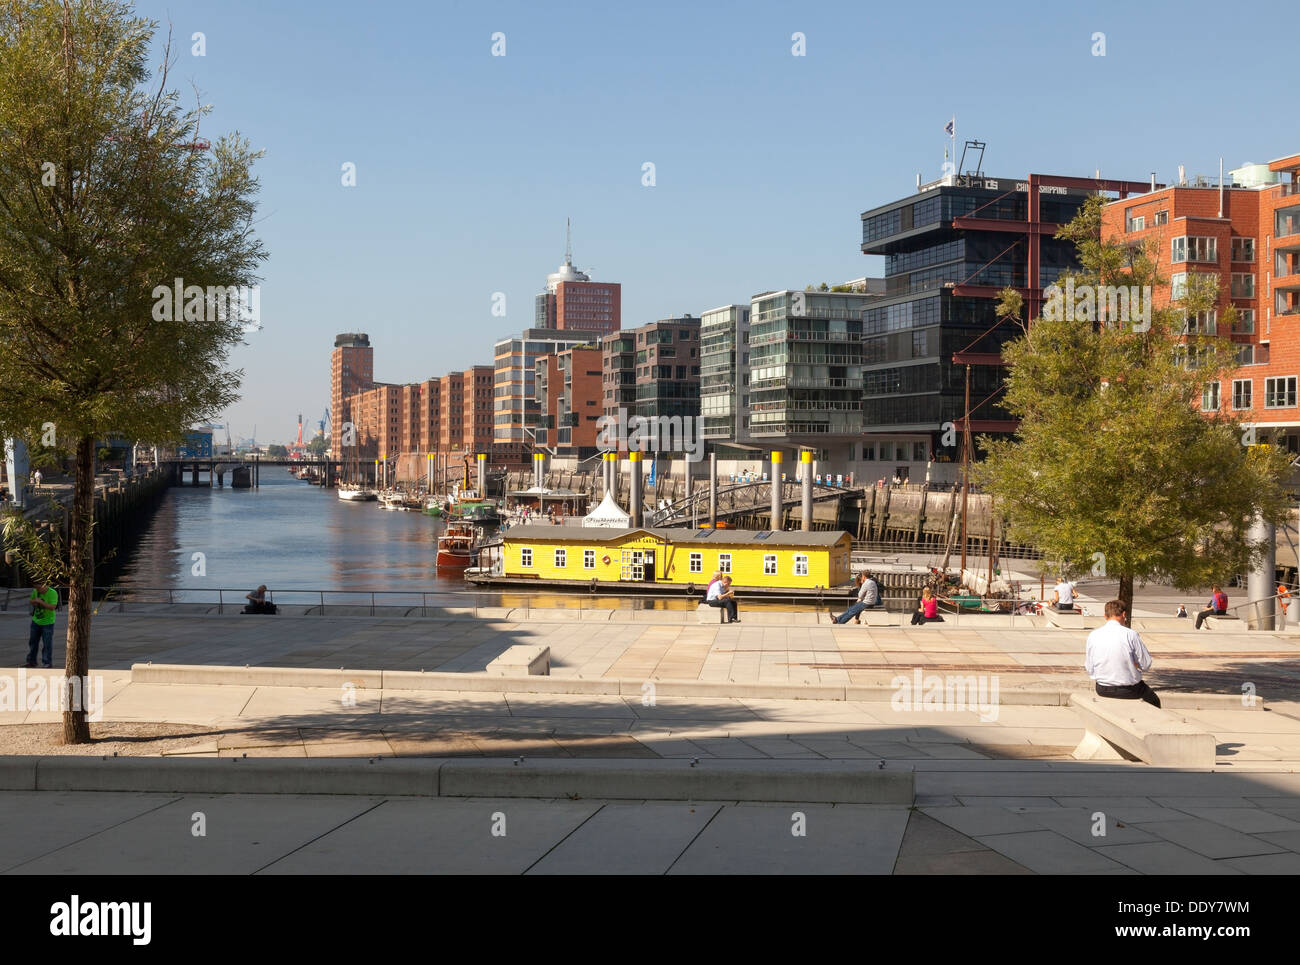 Hafen City, Am Sandtorkai / Dalmannkai trimestre, Hambourg, Allemagne Banque D'Images